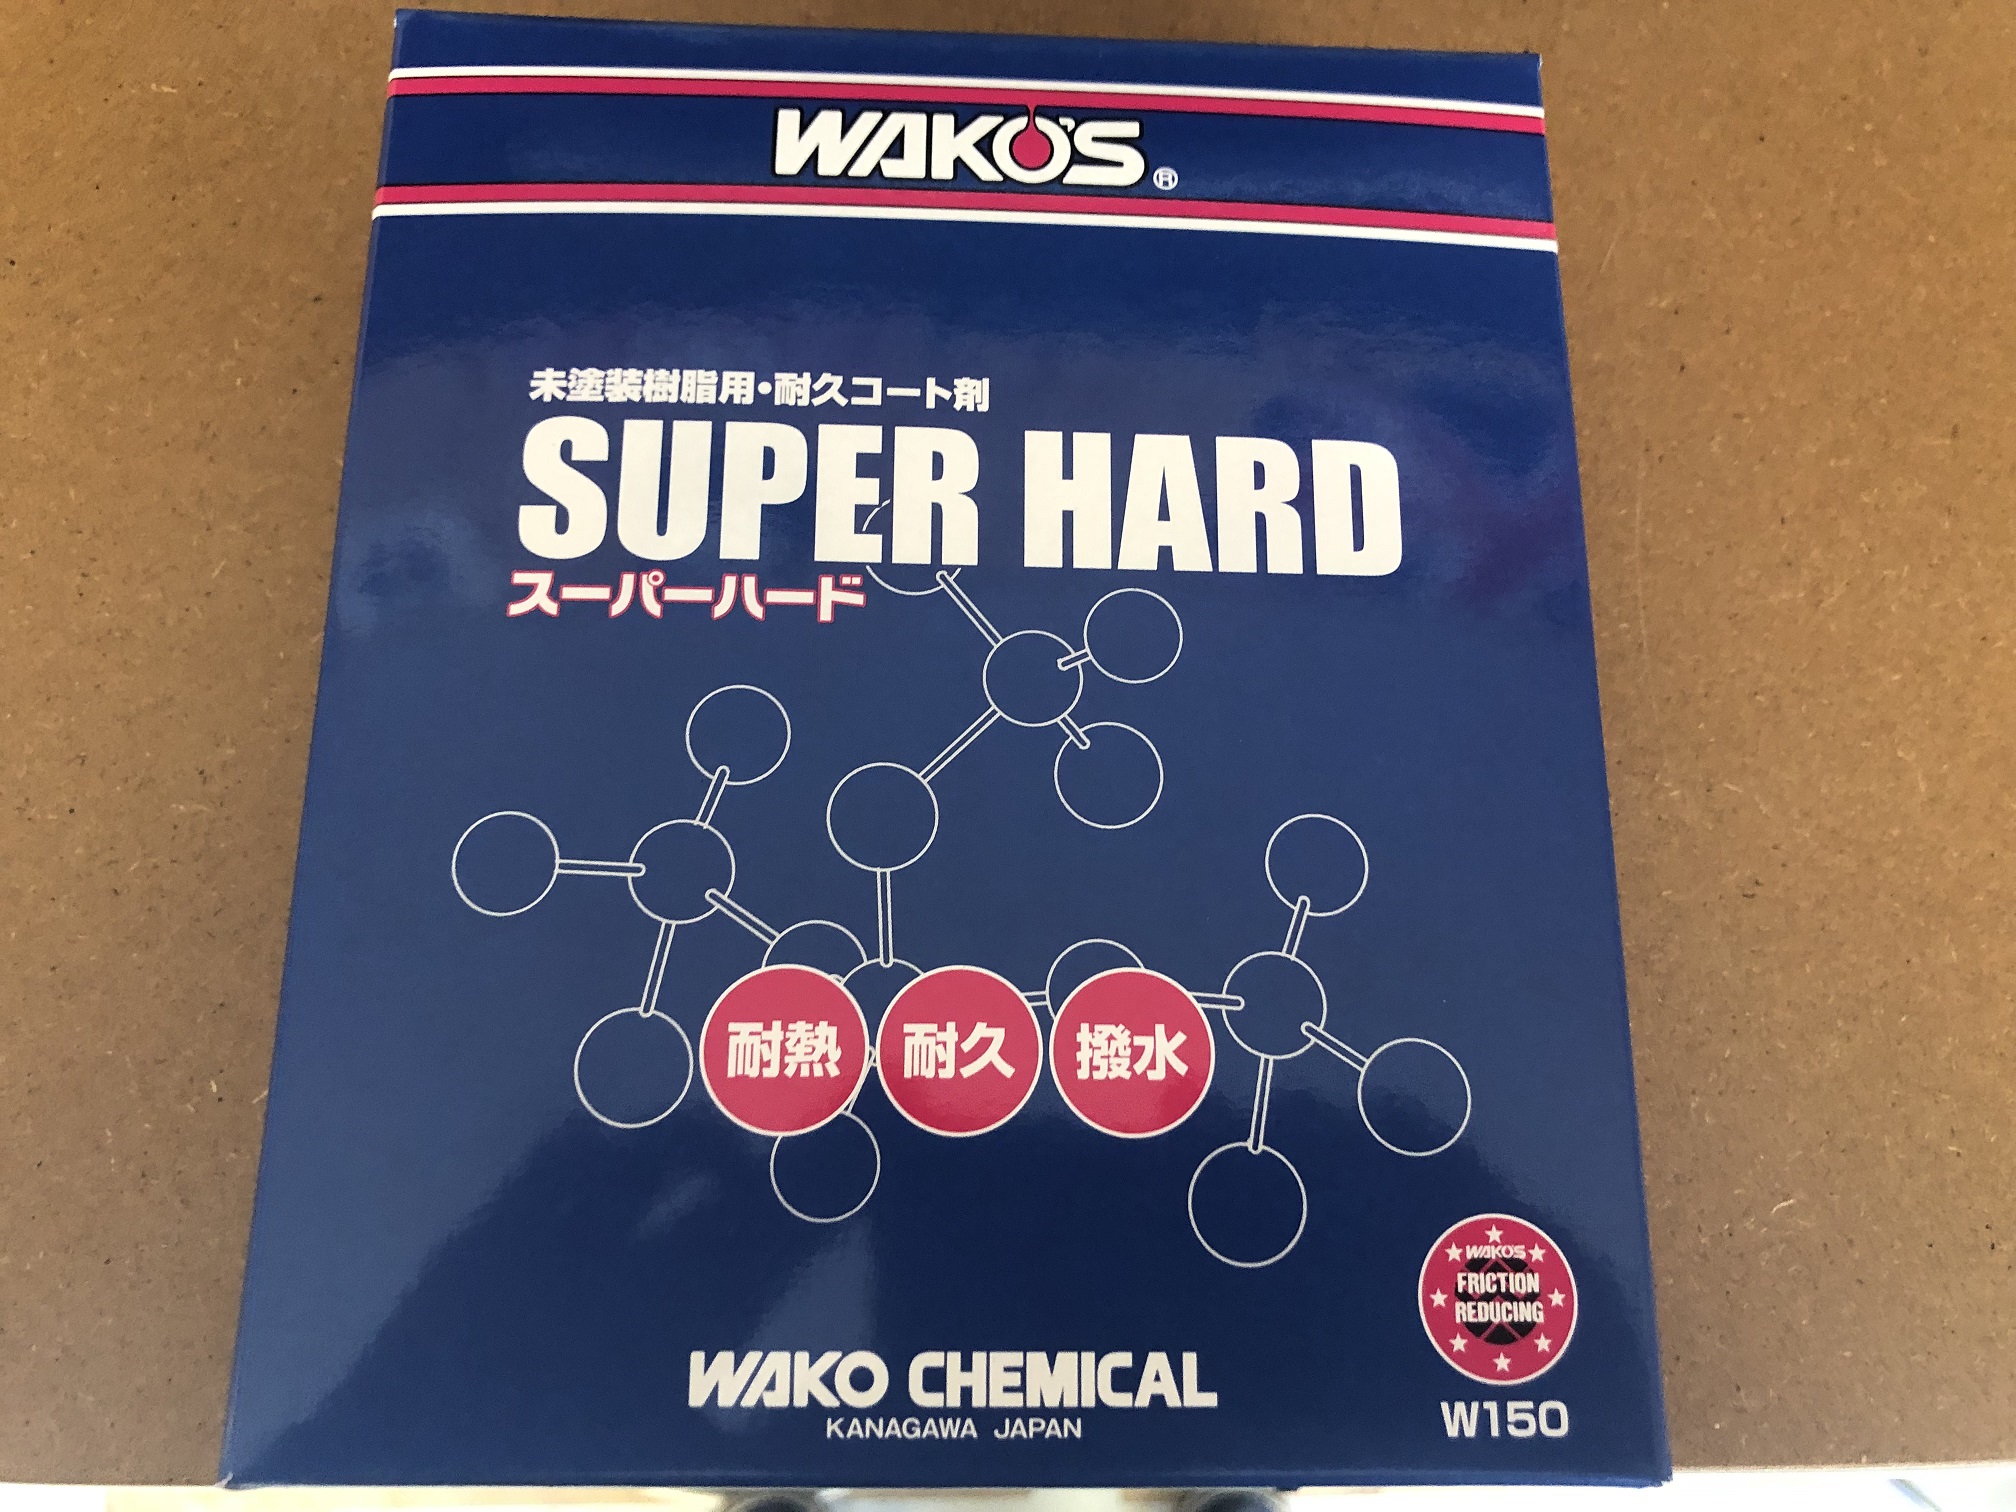 WAKO'S ワコーズ スーパーハード SH-Rを未塗装樹脂に試してみた